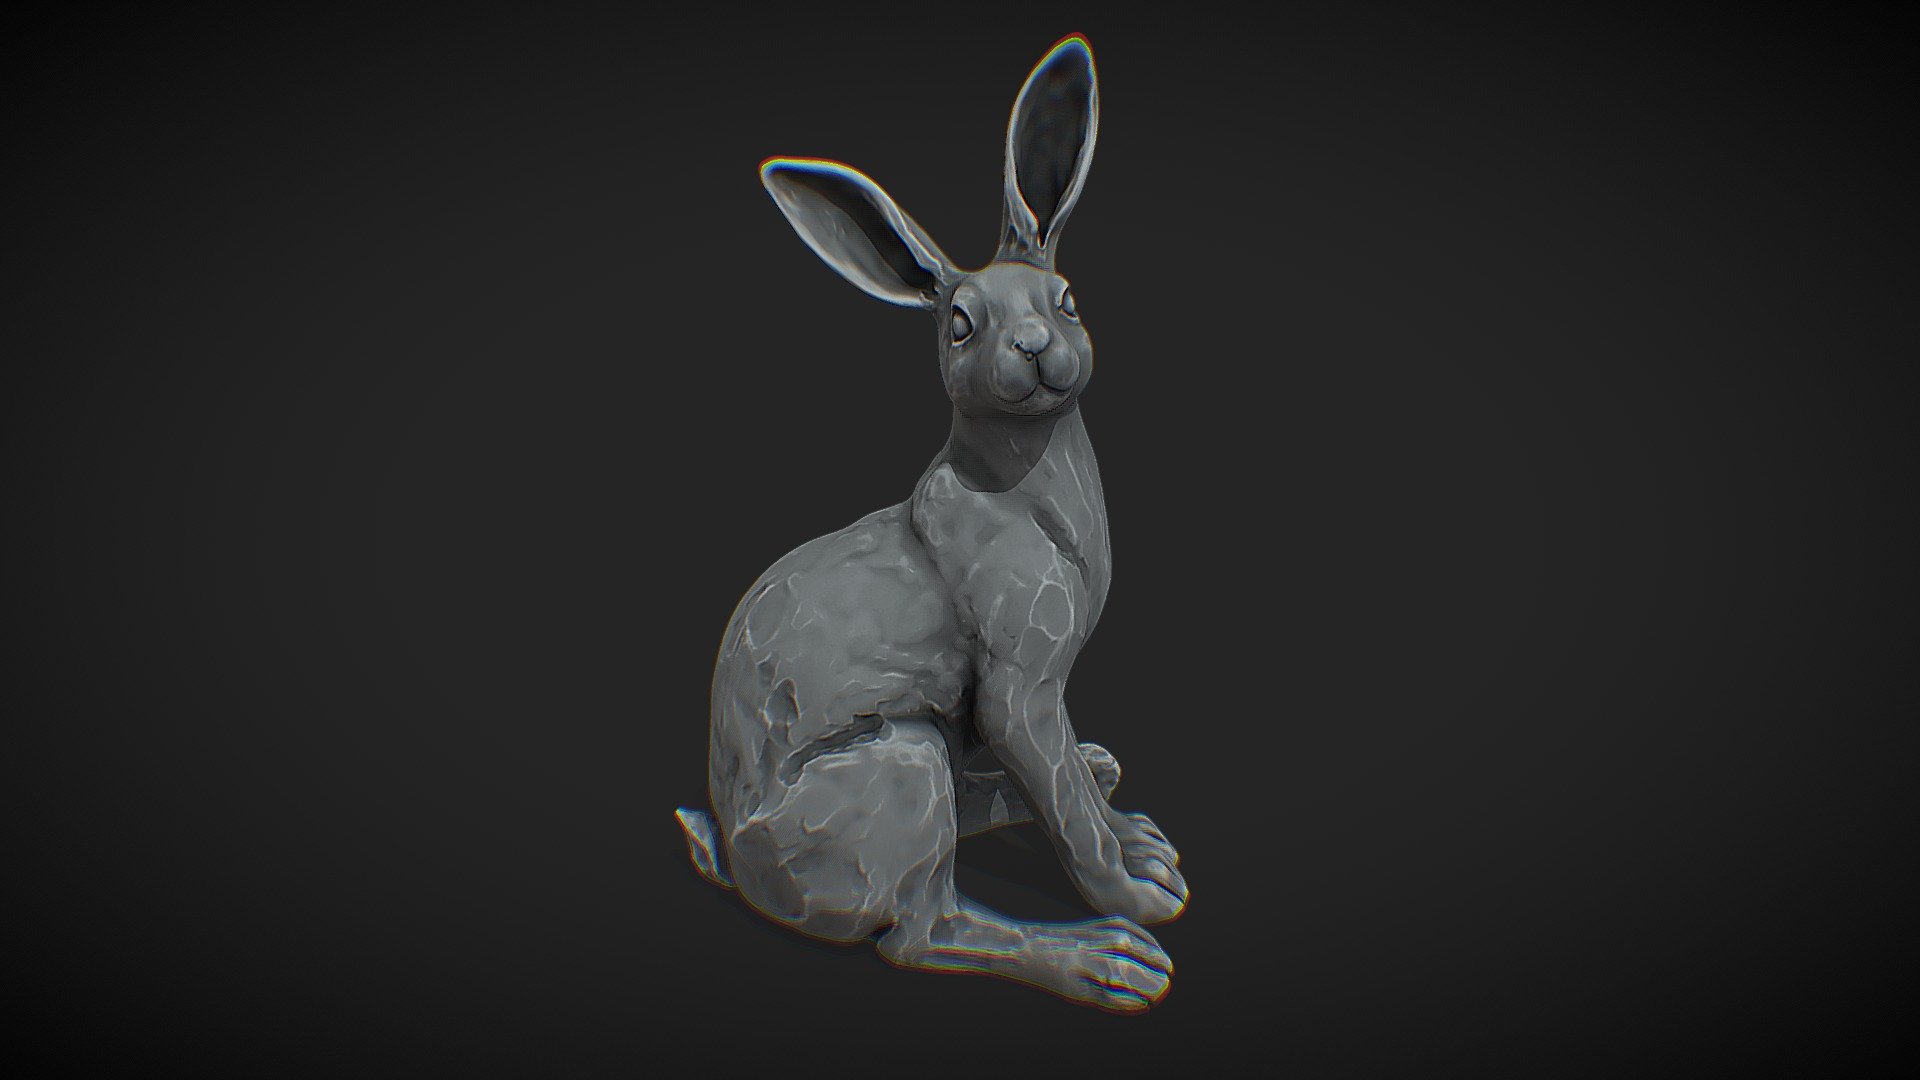 Bunny Sculpt - 3D model by 3DtheFreeD 3d model